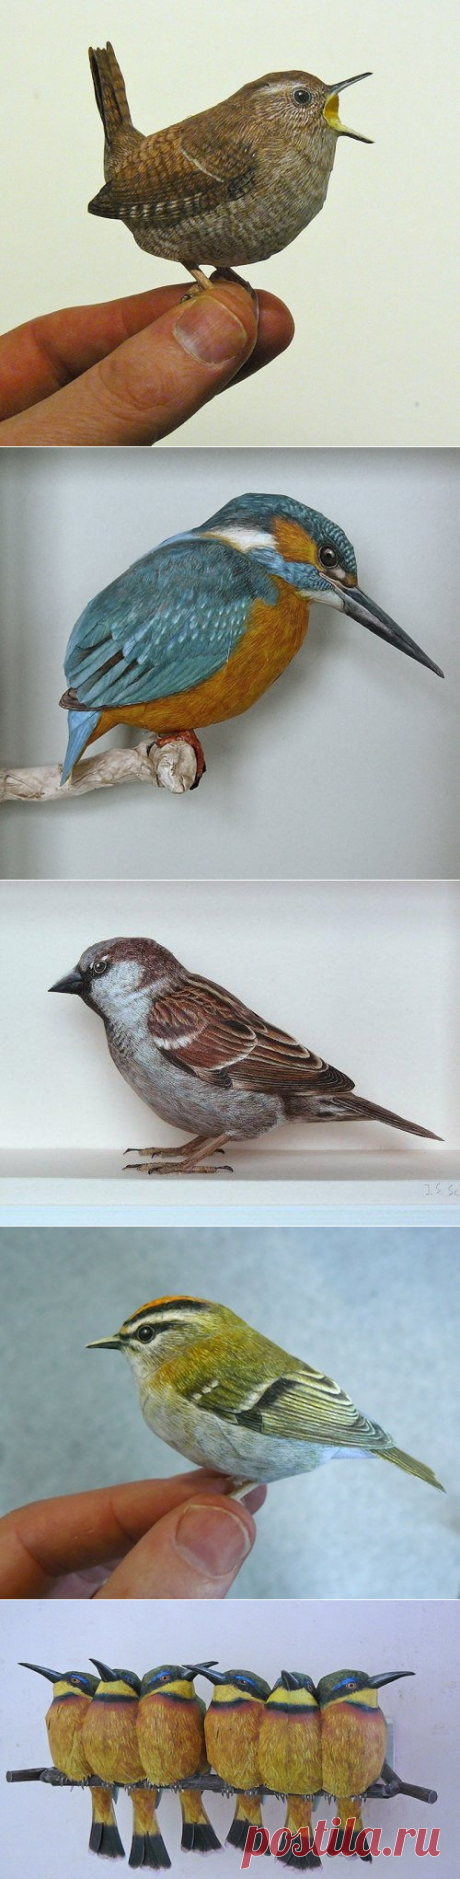 Сверхреалистичные бумажные 3D-модели птиц Йохана Шерфта